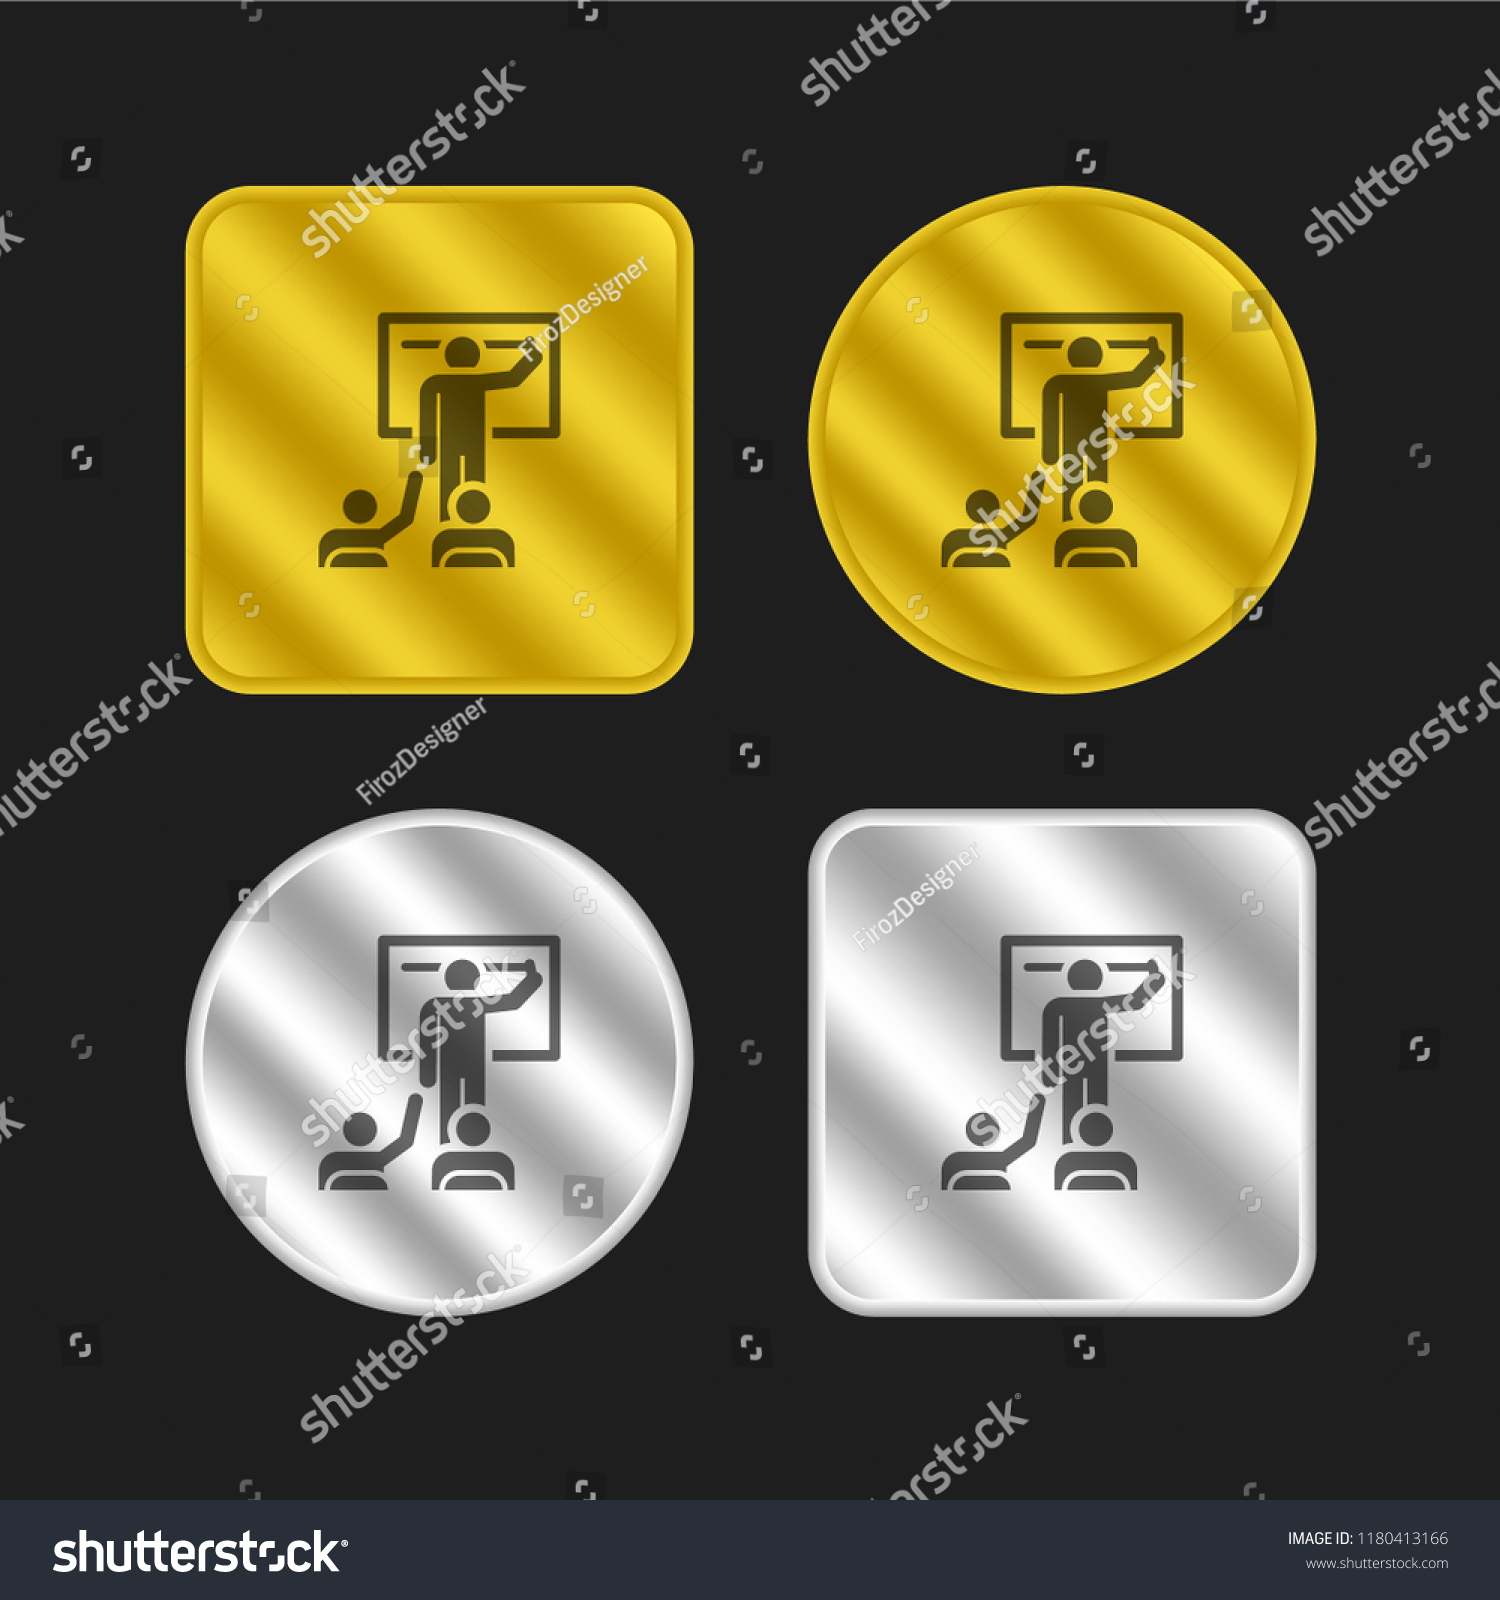 Classroom Gold Silver Metallic Coin Logo Stock Vector Royalty Free